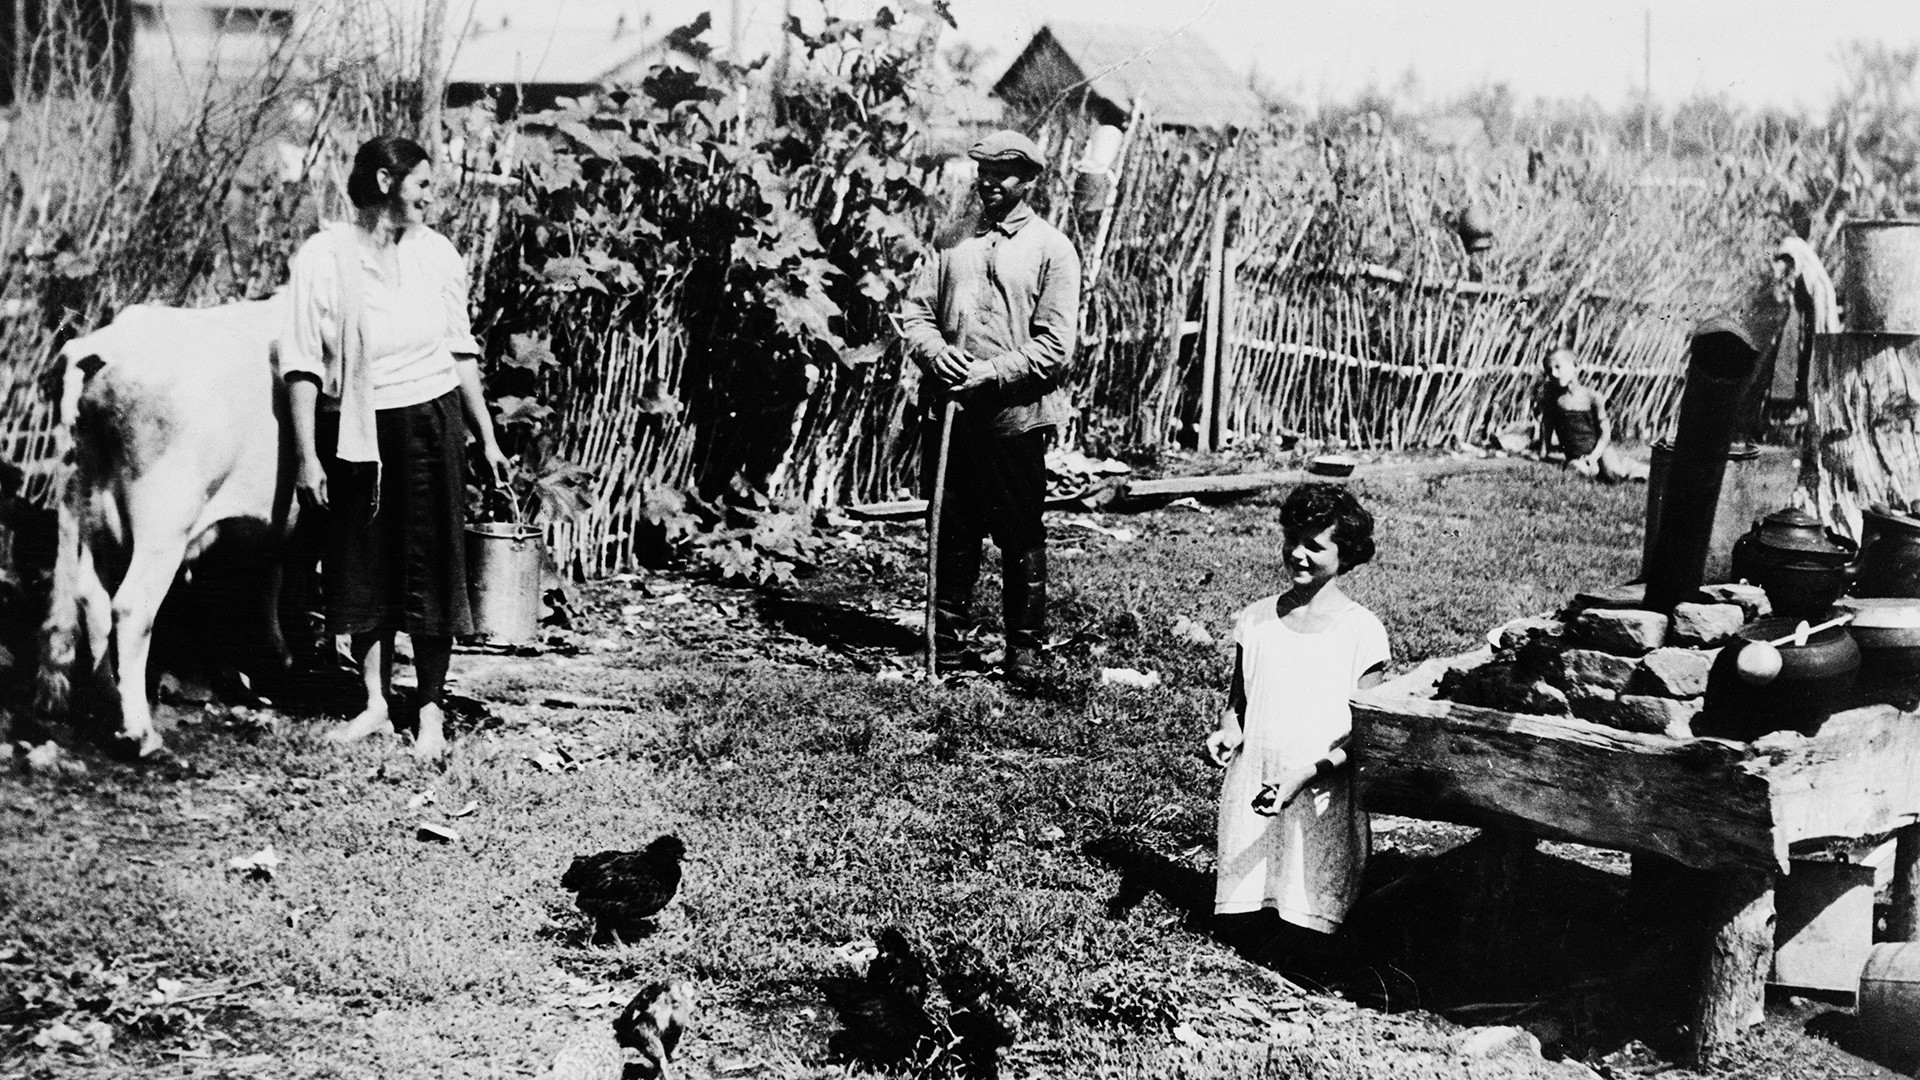 集団農場のミハイル・ゲフェン、妻のセイナと娘、ビロビジャン